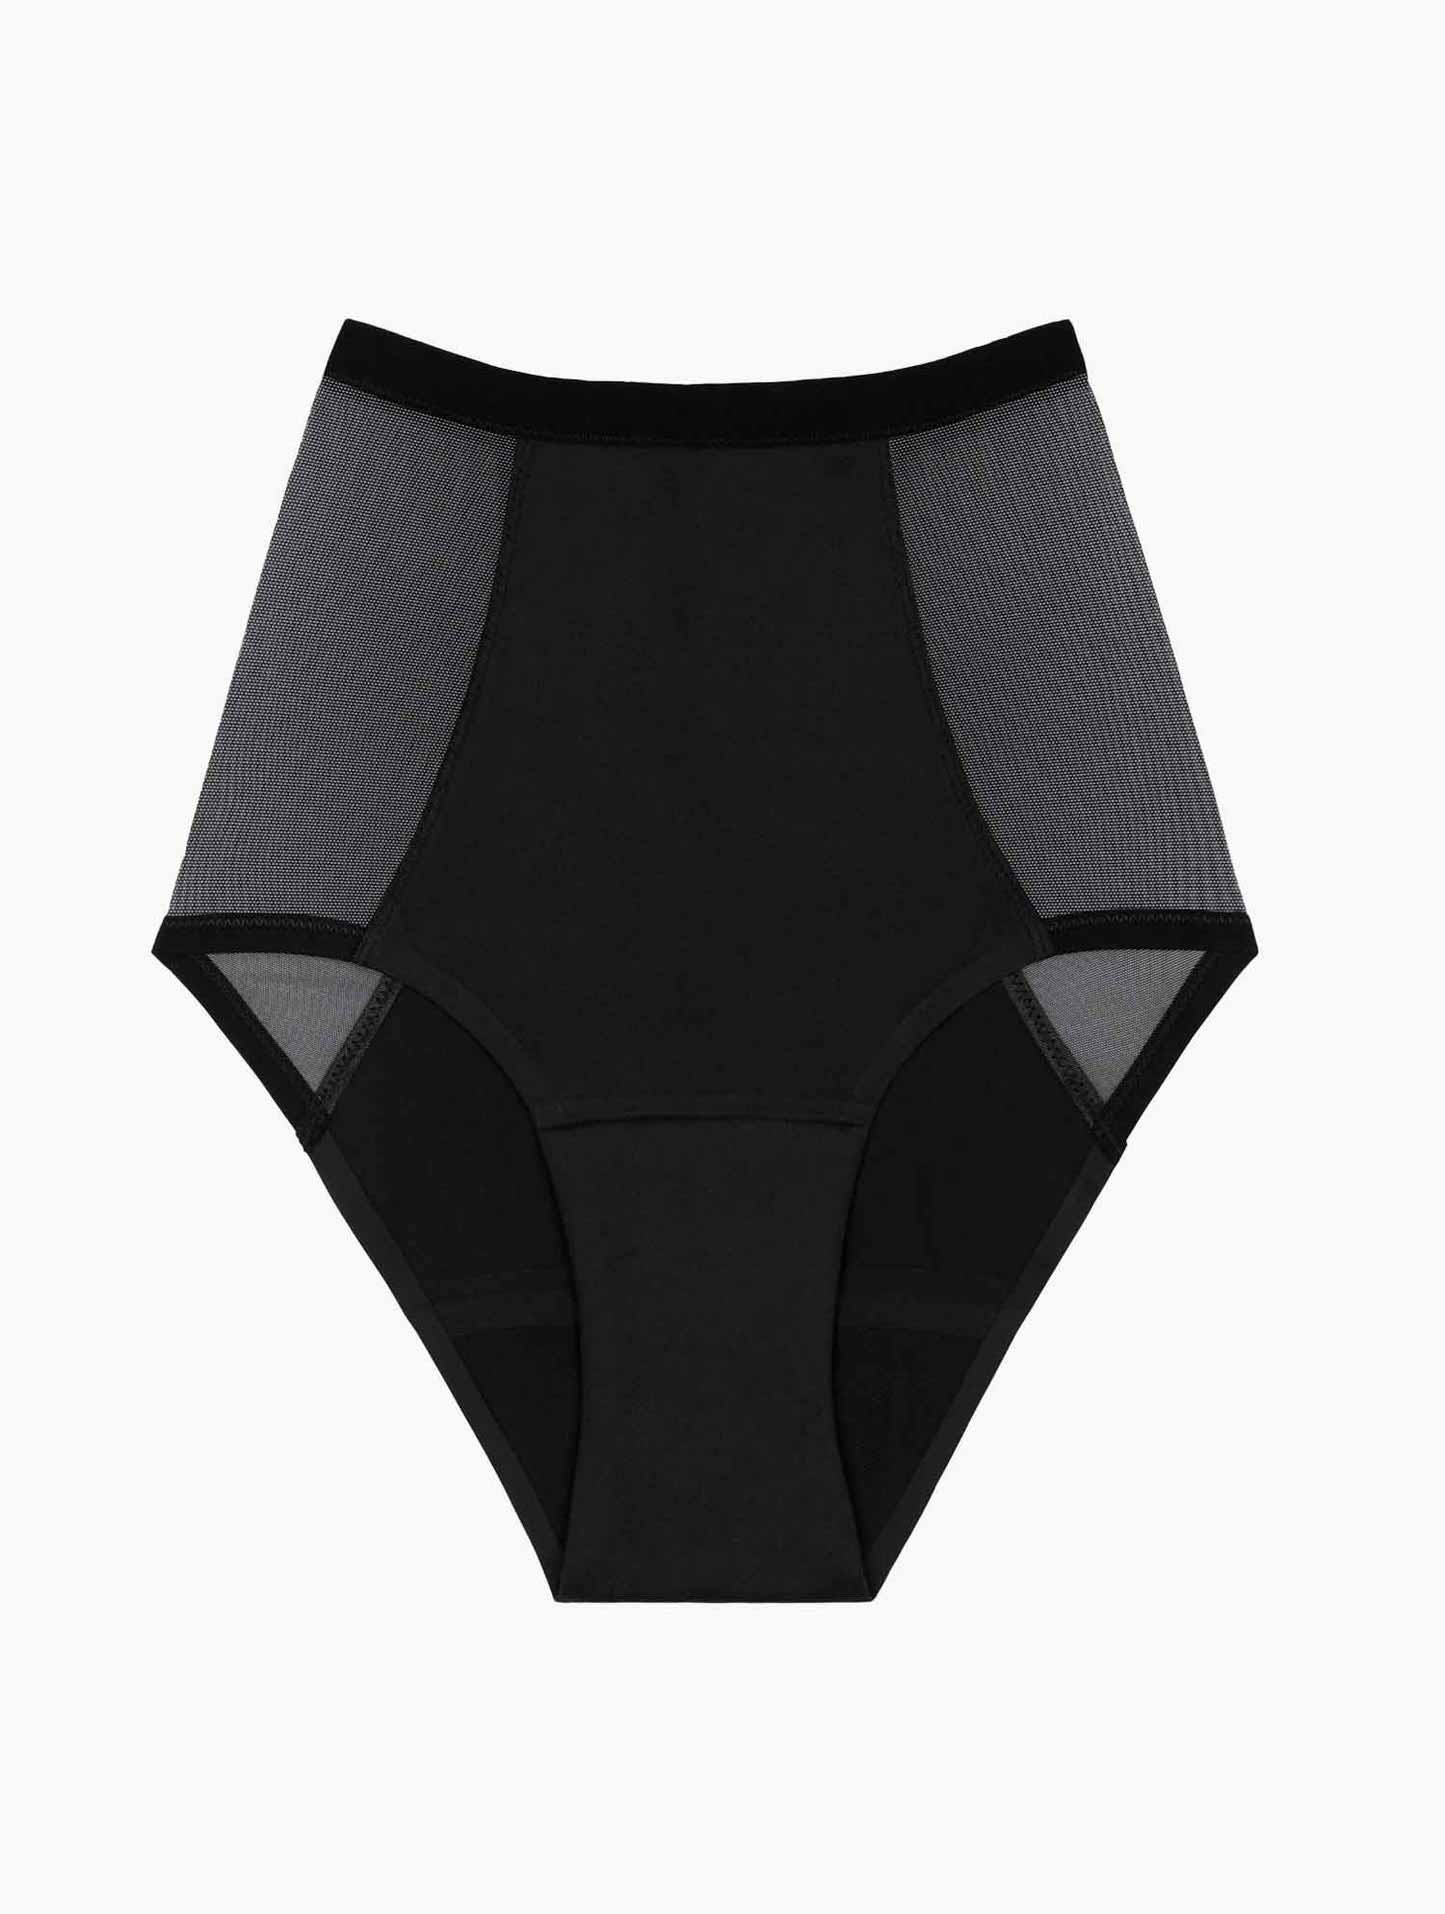 http://smoon-lingerie.com/cdn/shop/products/packshot-taille-haute-tulle.jpg?v=1668100519